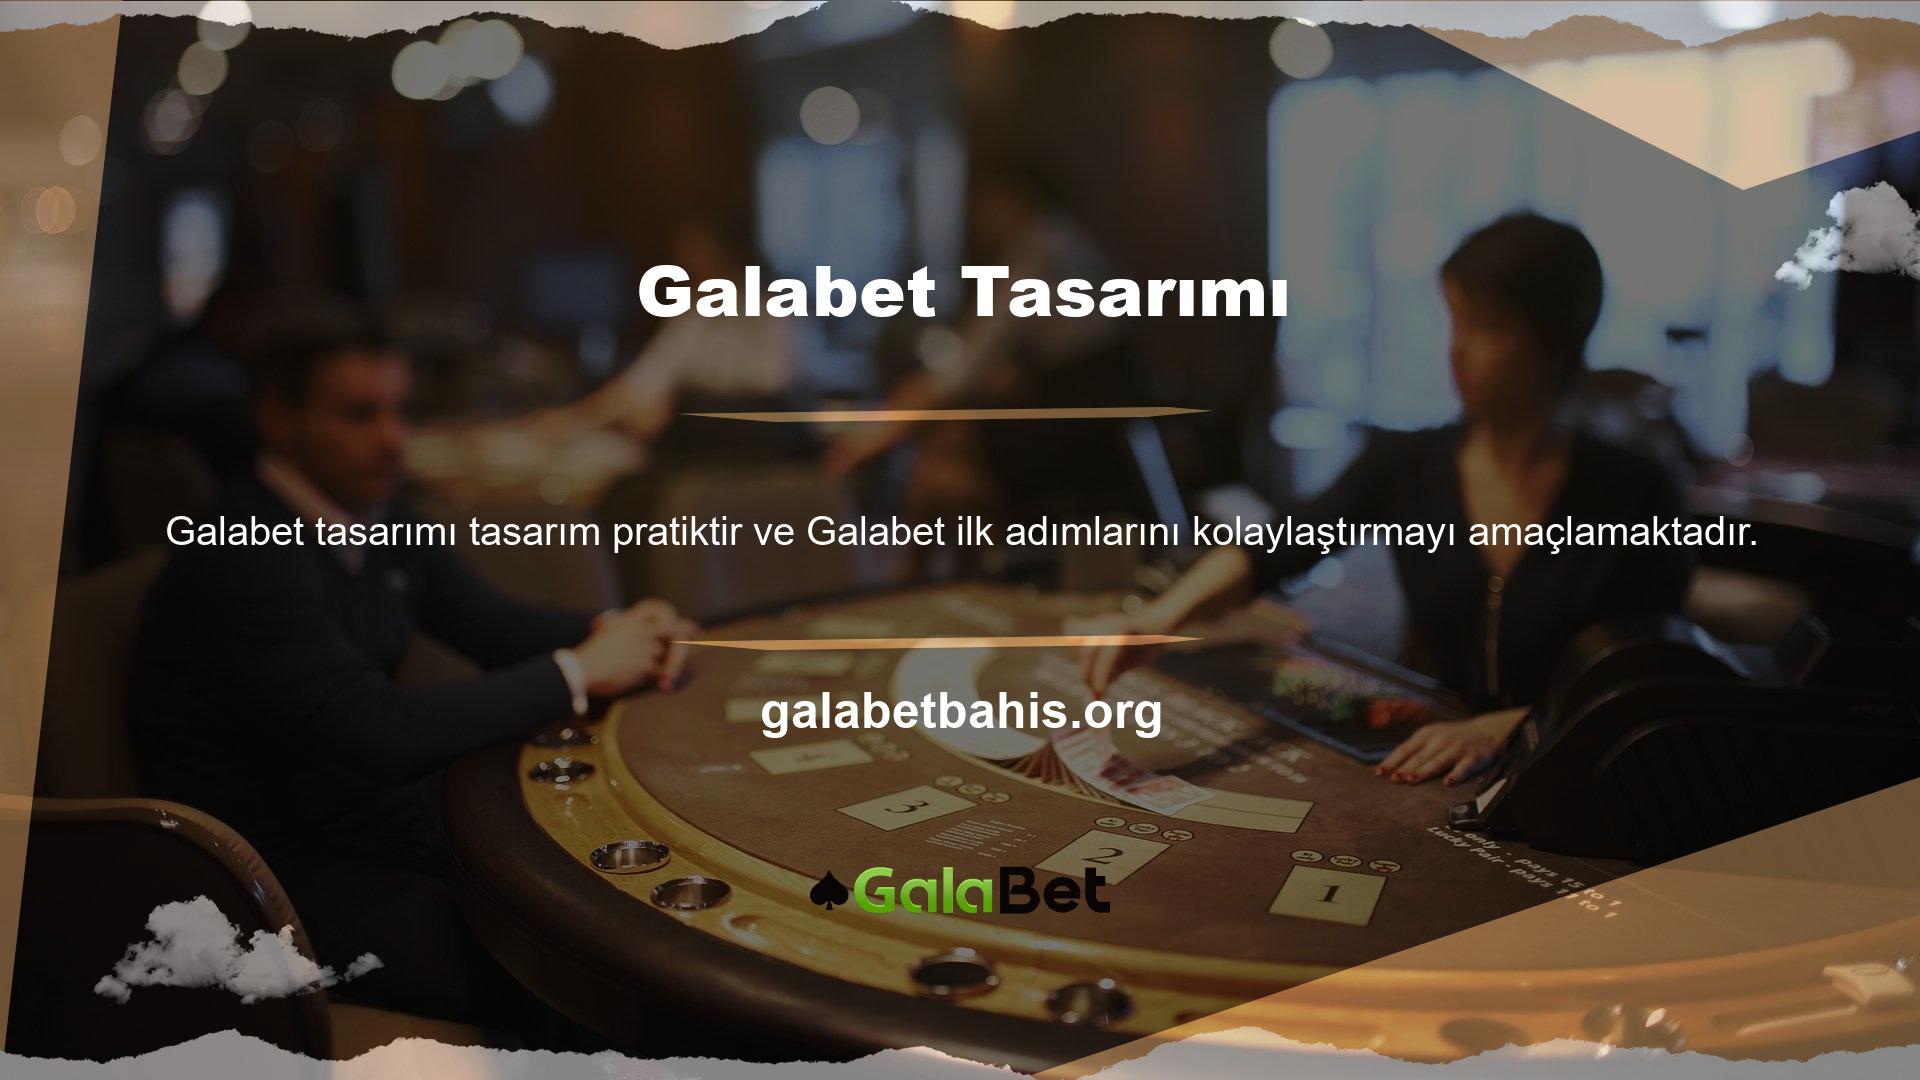 Galabet web sitesi, kullanıcıların garanti edilen işlemler yapmasına olanak tanır